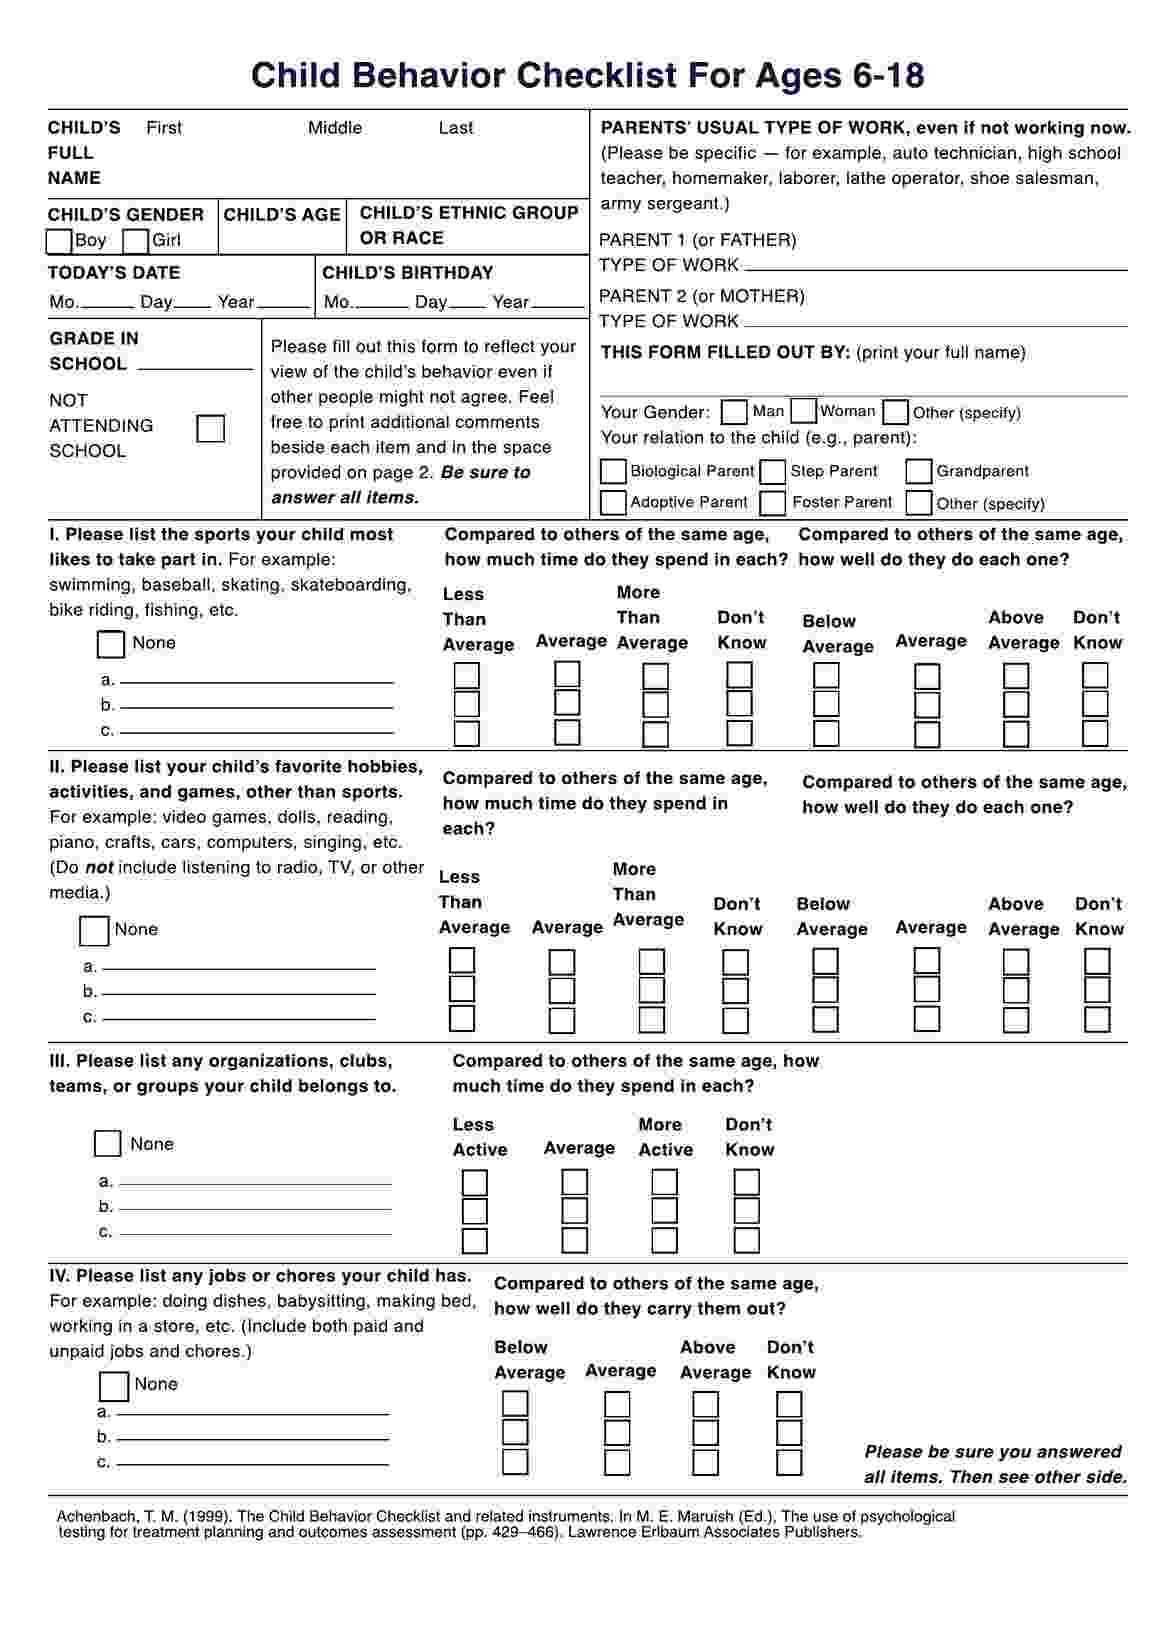 Child Behavior Checklist (CBCL) PDF Example